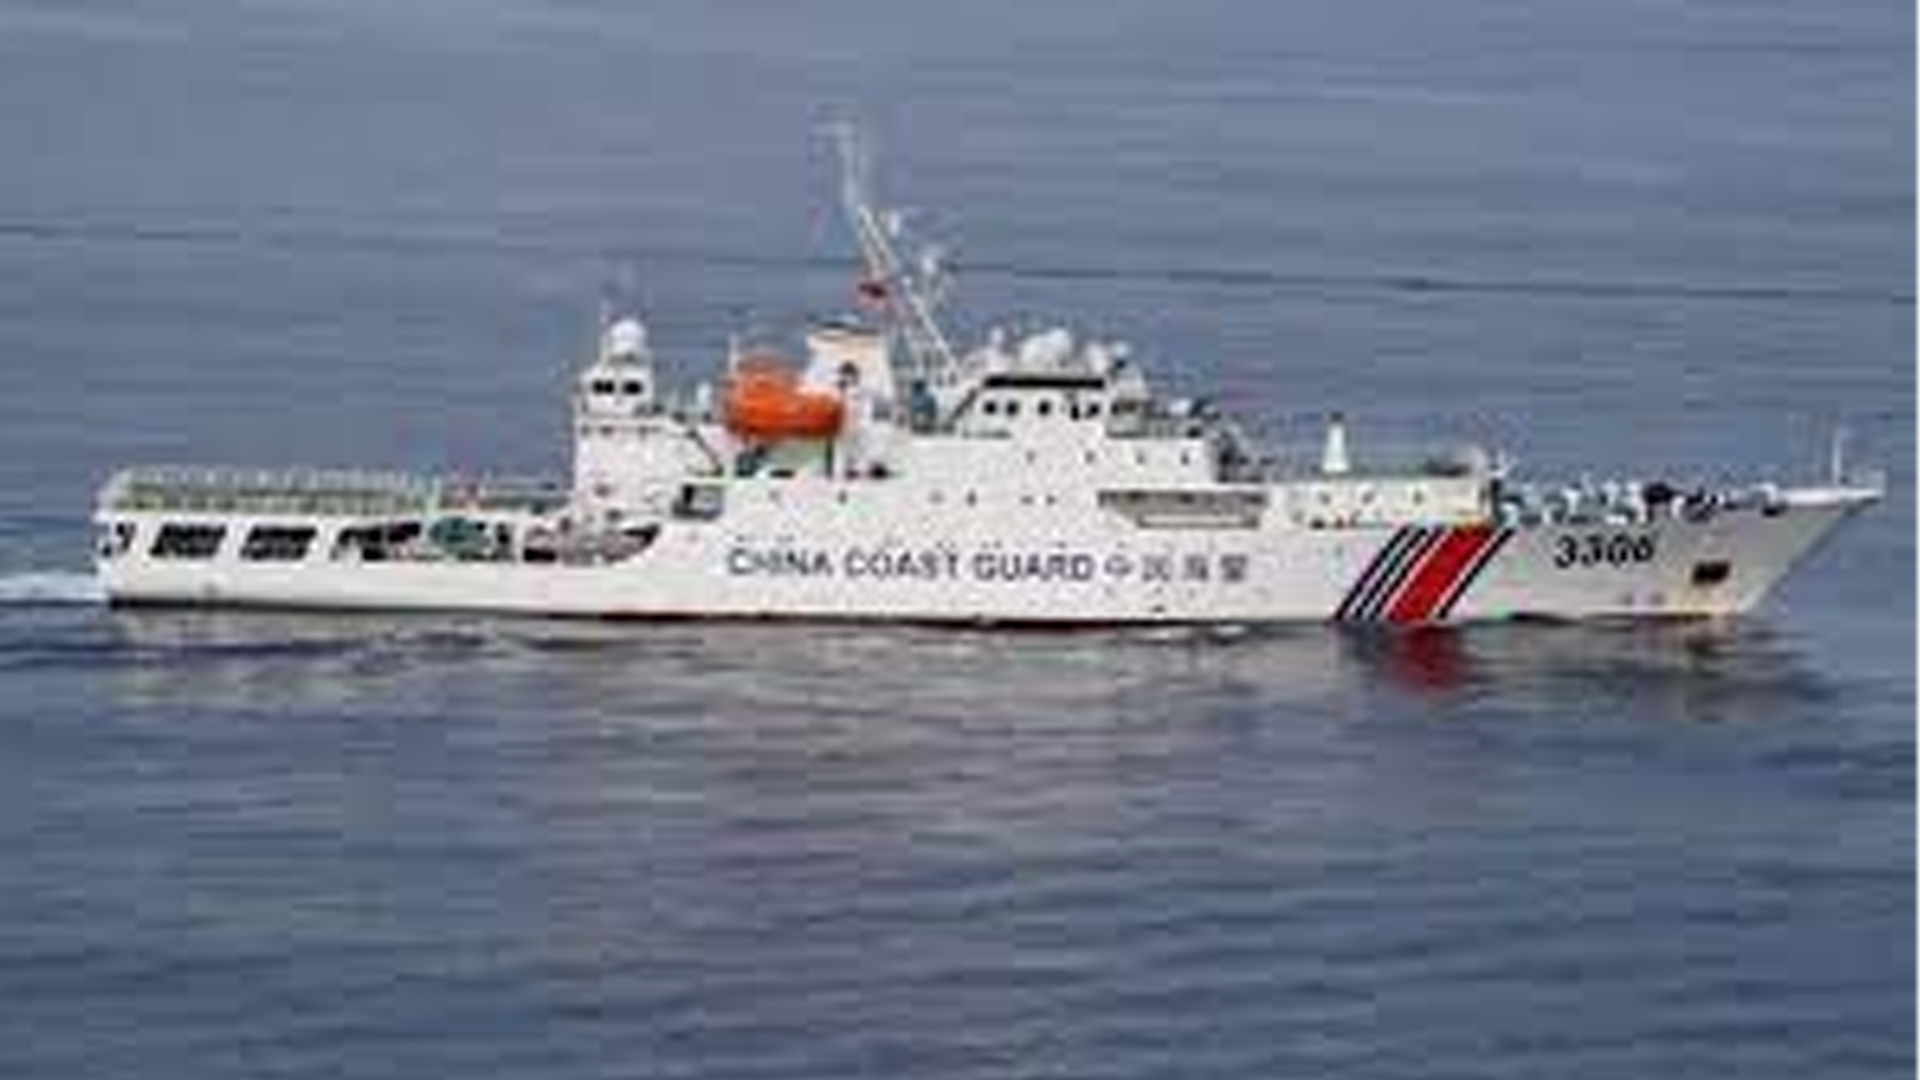 China coast guard patrols territorial waters of Diaoyu islands (Senkaku) on March 20